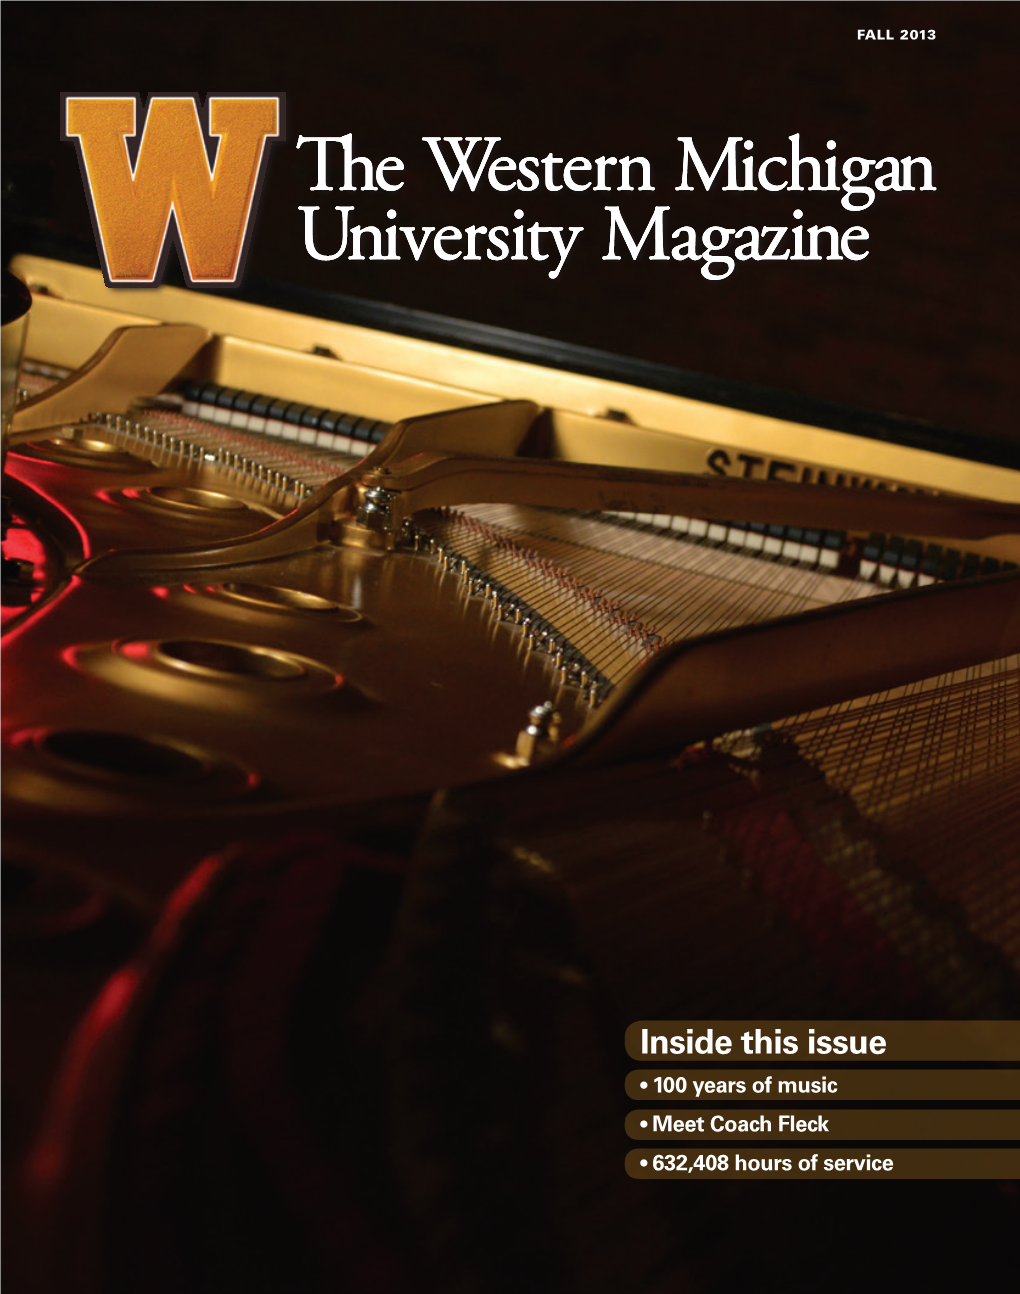 The Western Michigan University Magazine, Fall 2013